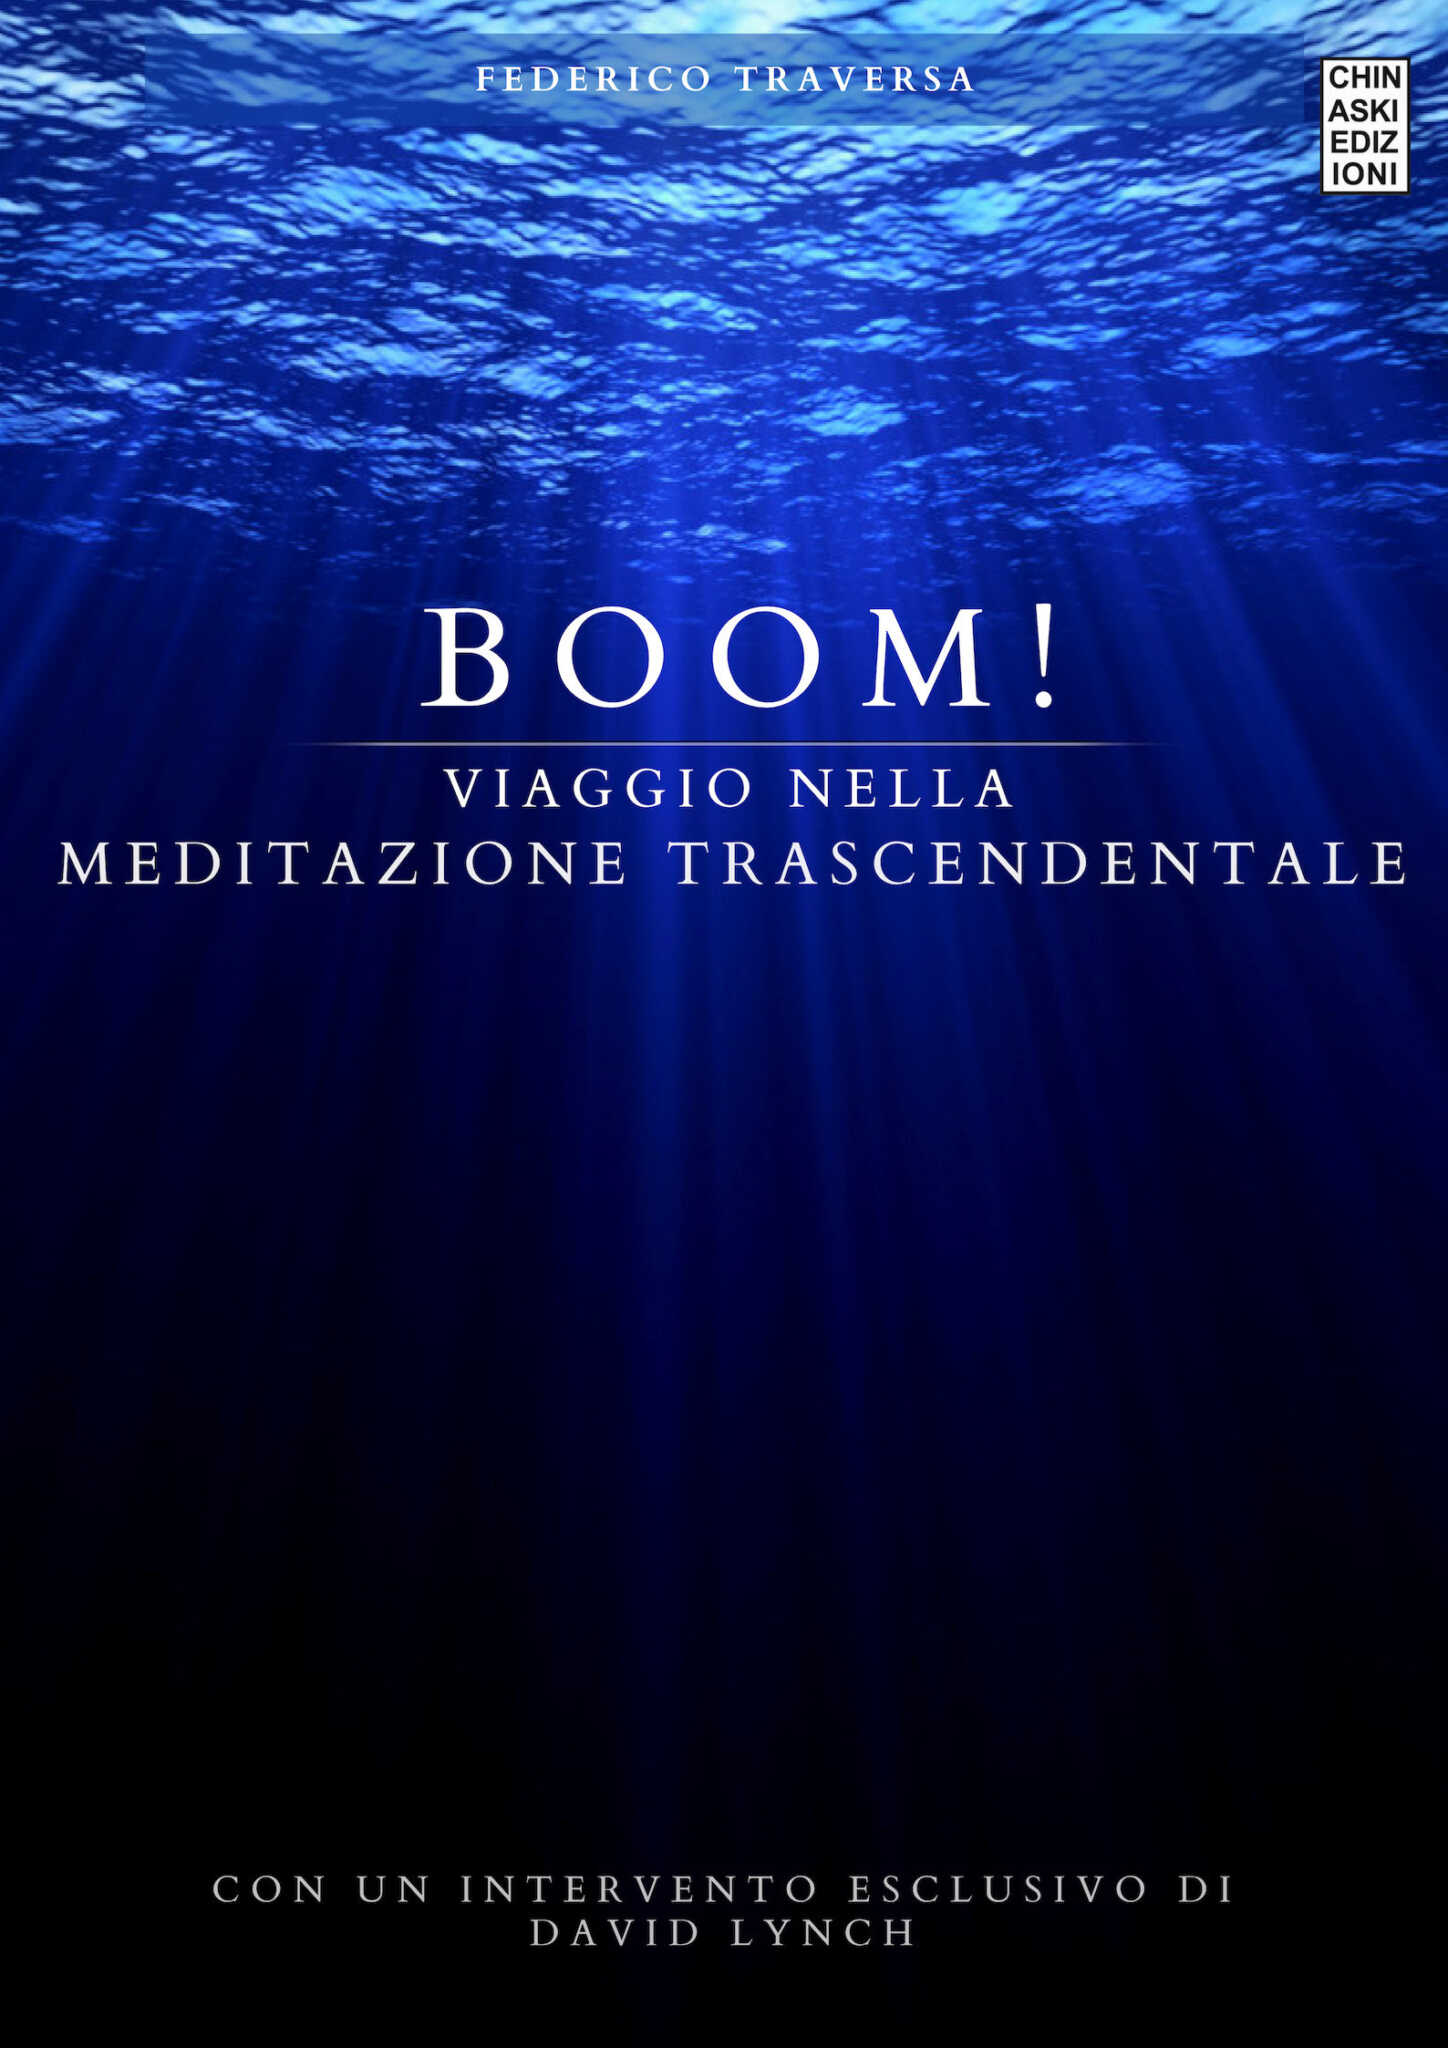 ‘Boom! Viaggio nella Meditazione Trascendentale’ di Federico Traversa per Cinaski editore. Lunedì 10 giugno a Napoli